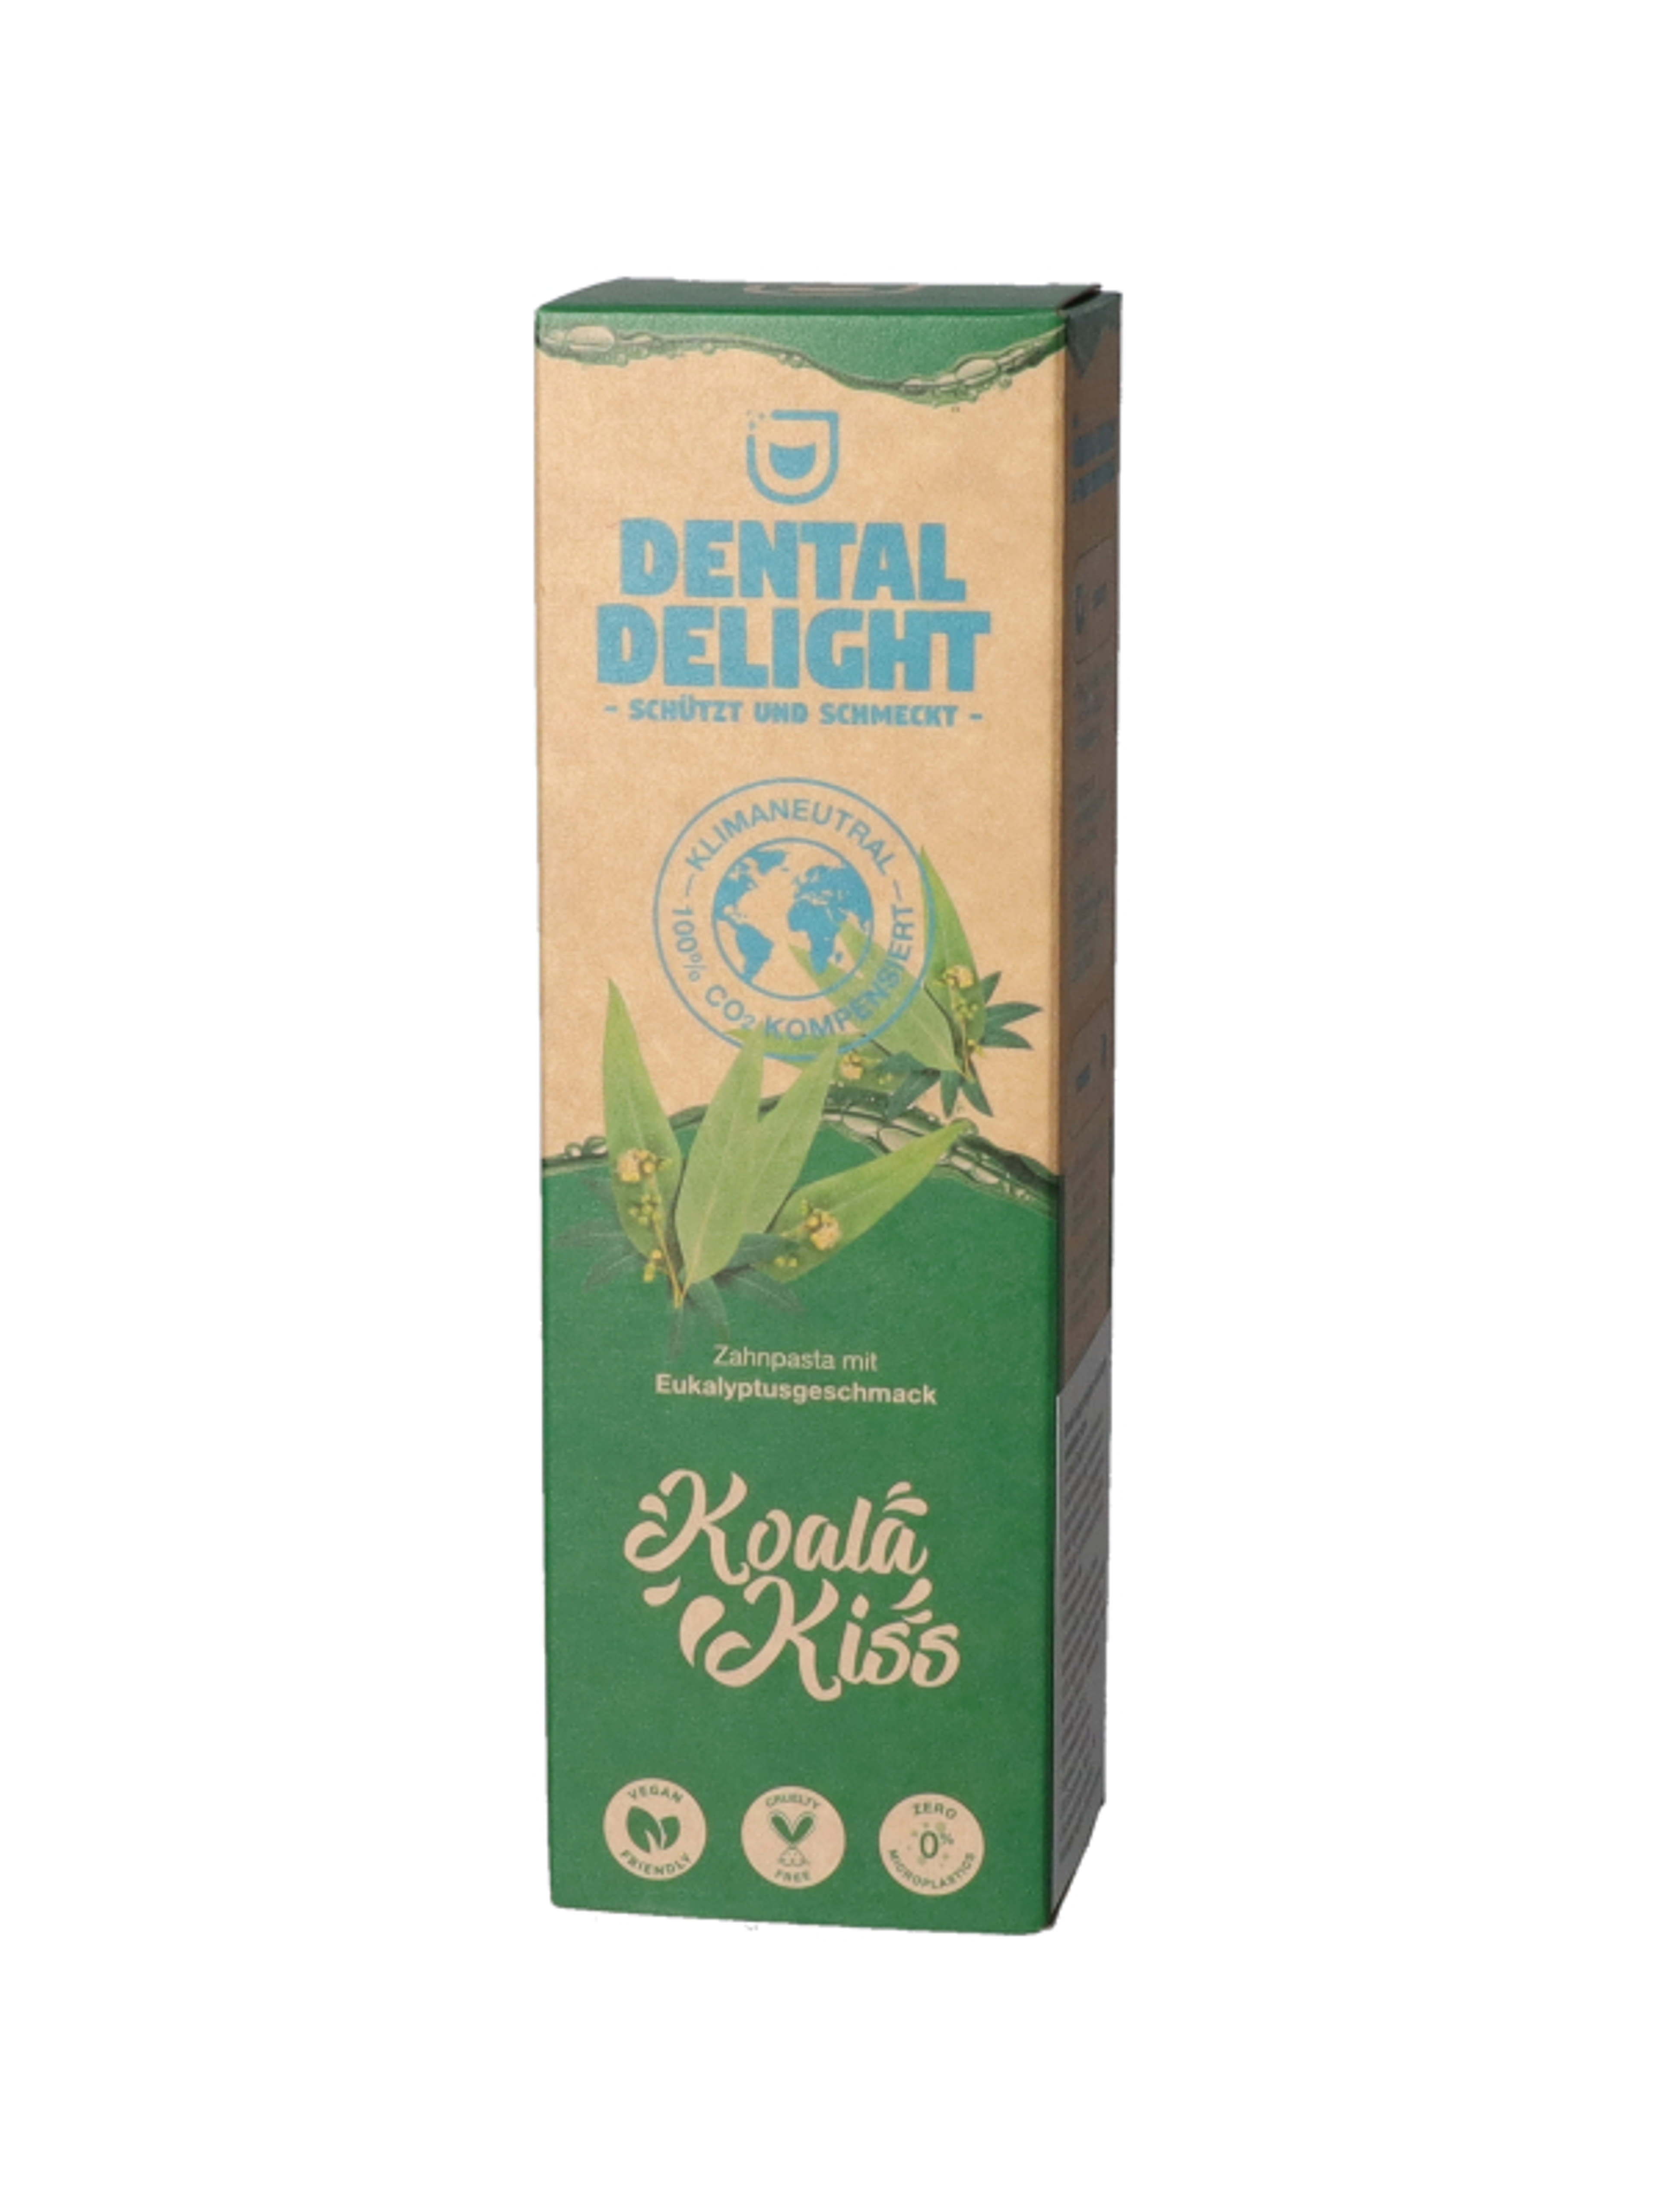 Dental Delight Koala Kiss fogkrém - 75 ml-6